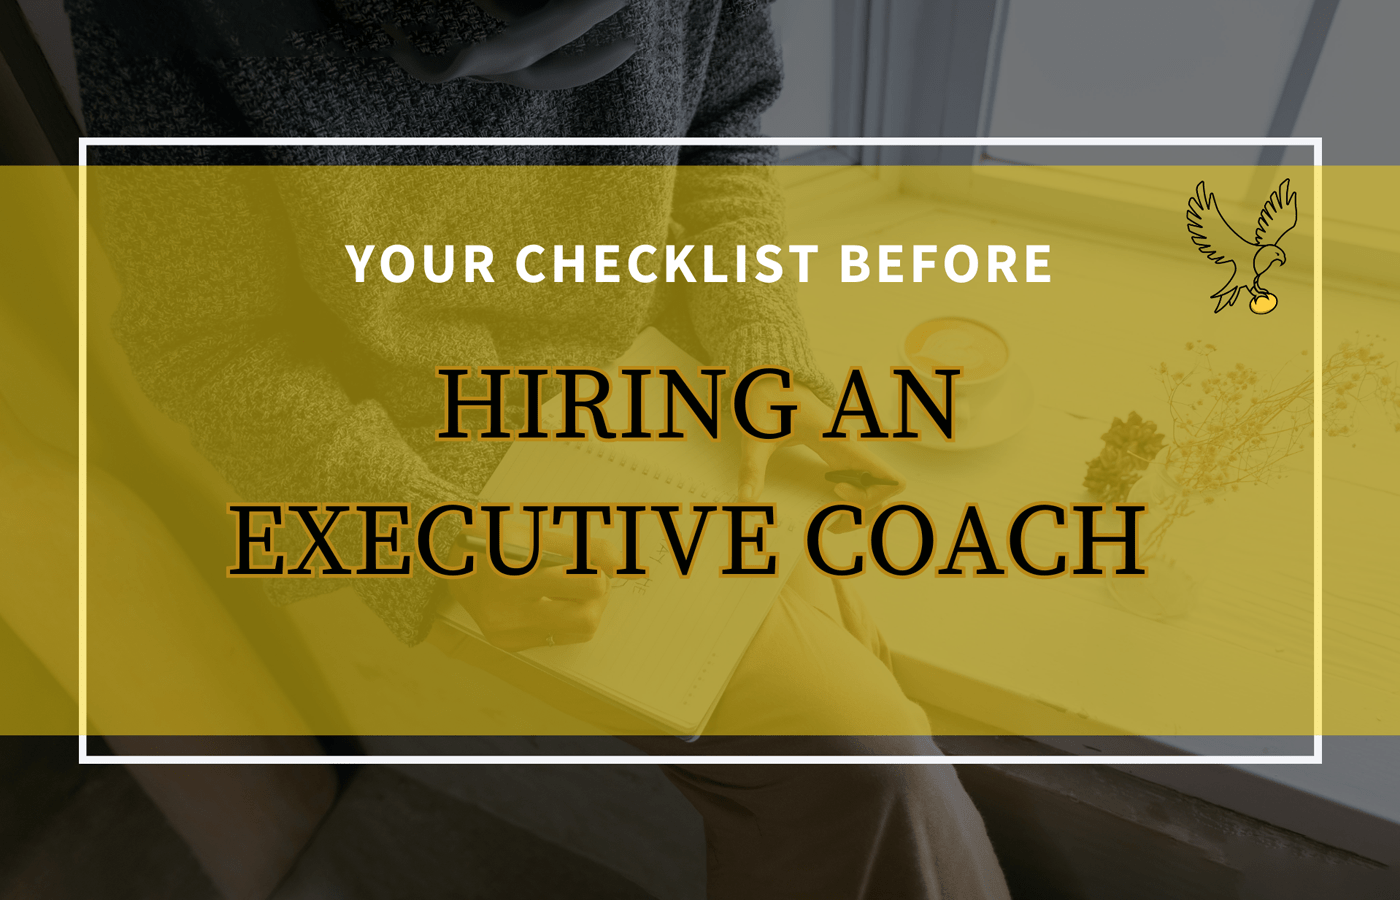 Hiring an executive coach: BusinessHAB.com